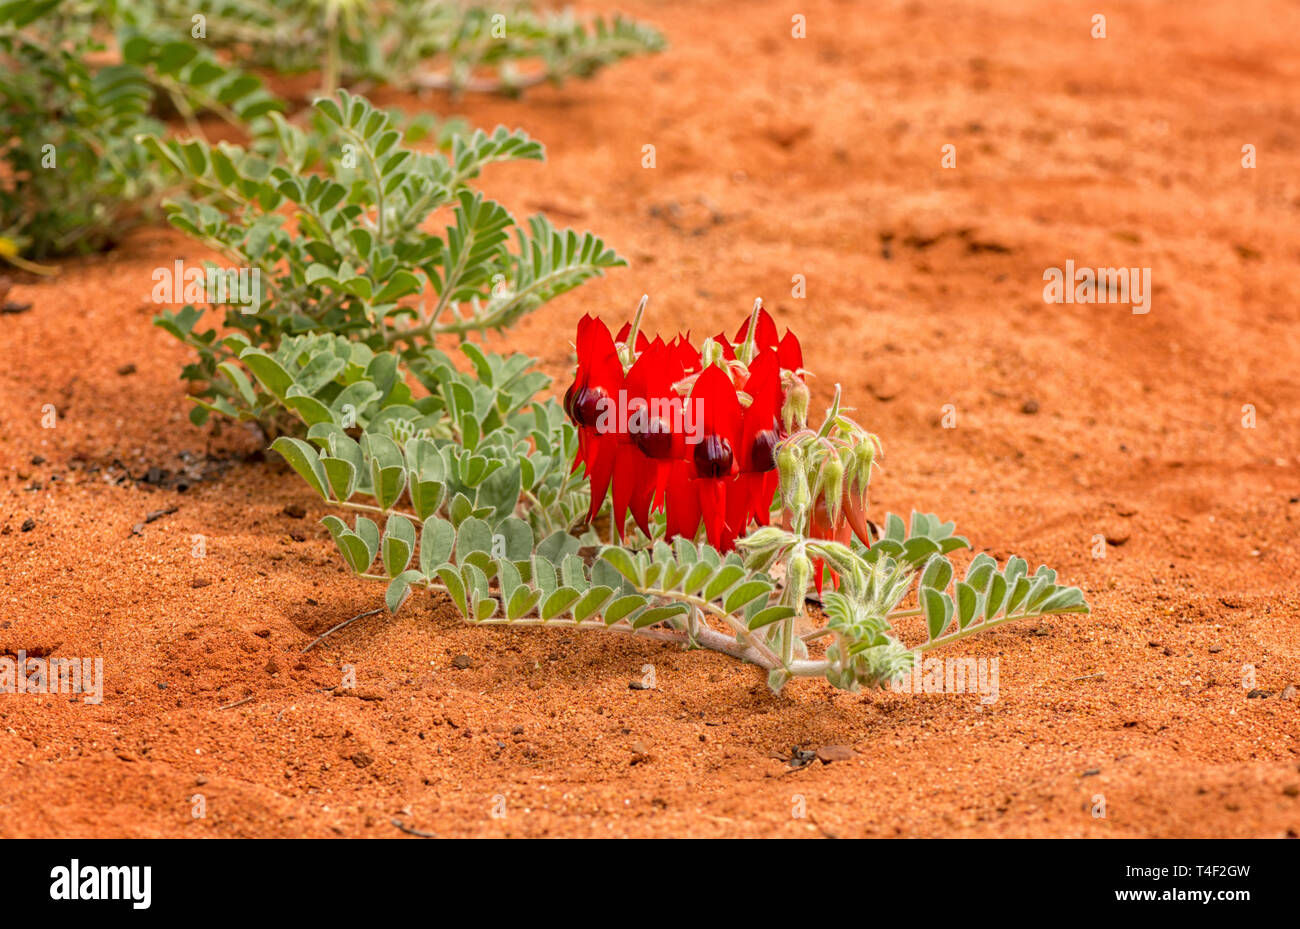 Swainsona formosa, Fabaceae, fiore emblema del Sud Australia si trova spesso nel deserto. Foto Stock